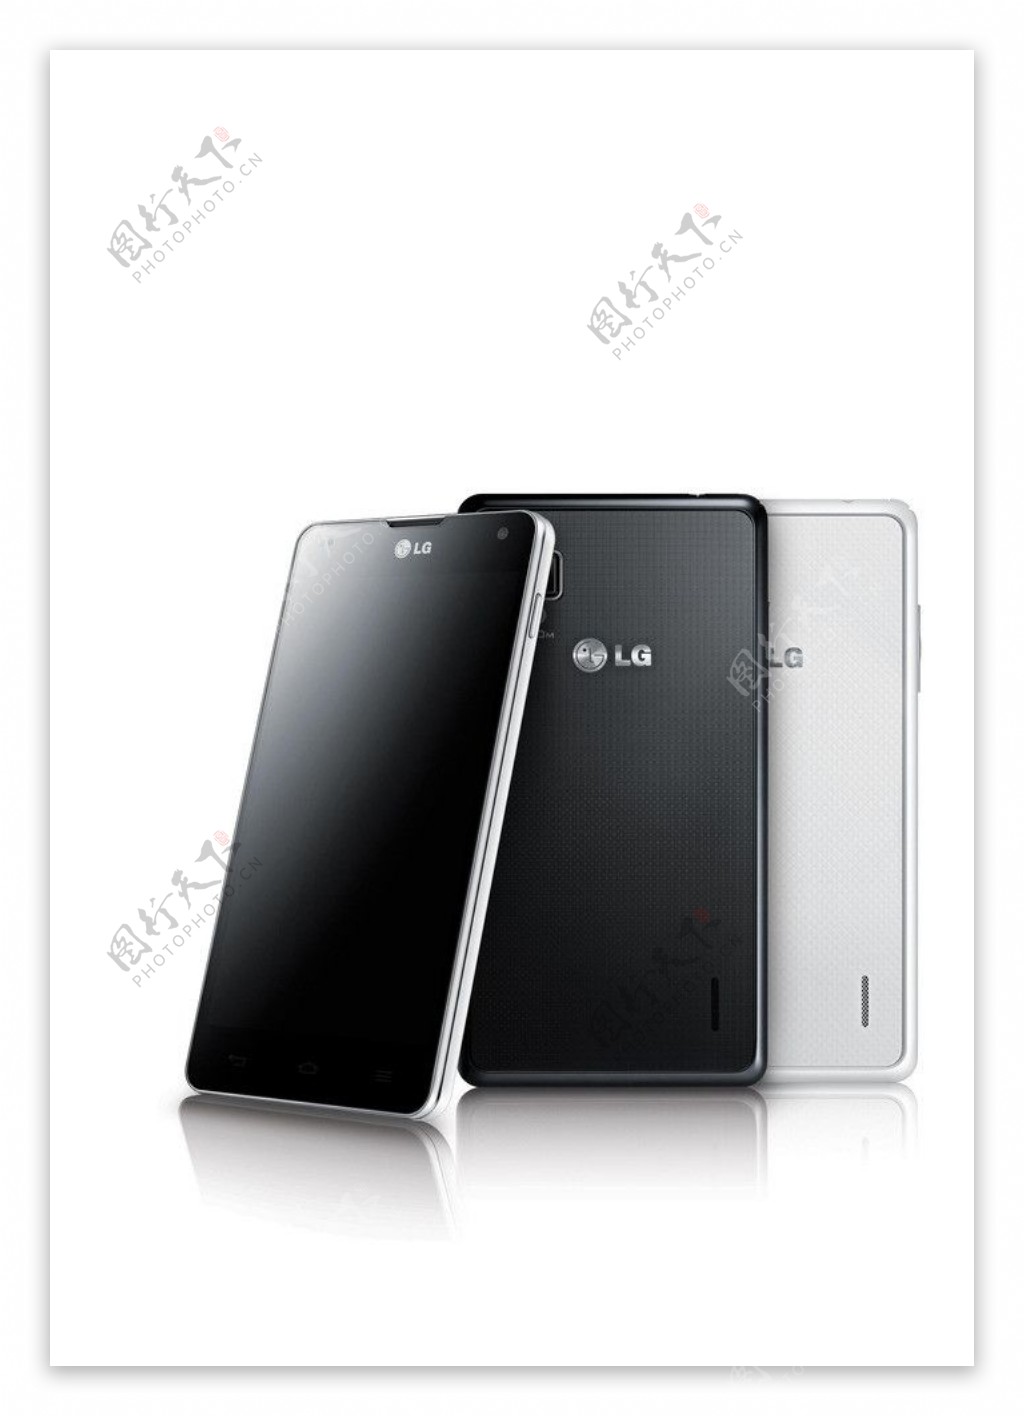 LG手机图片